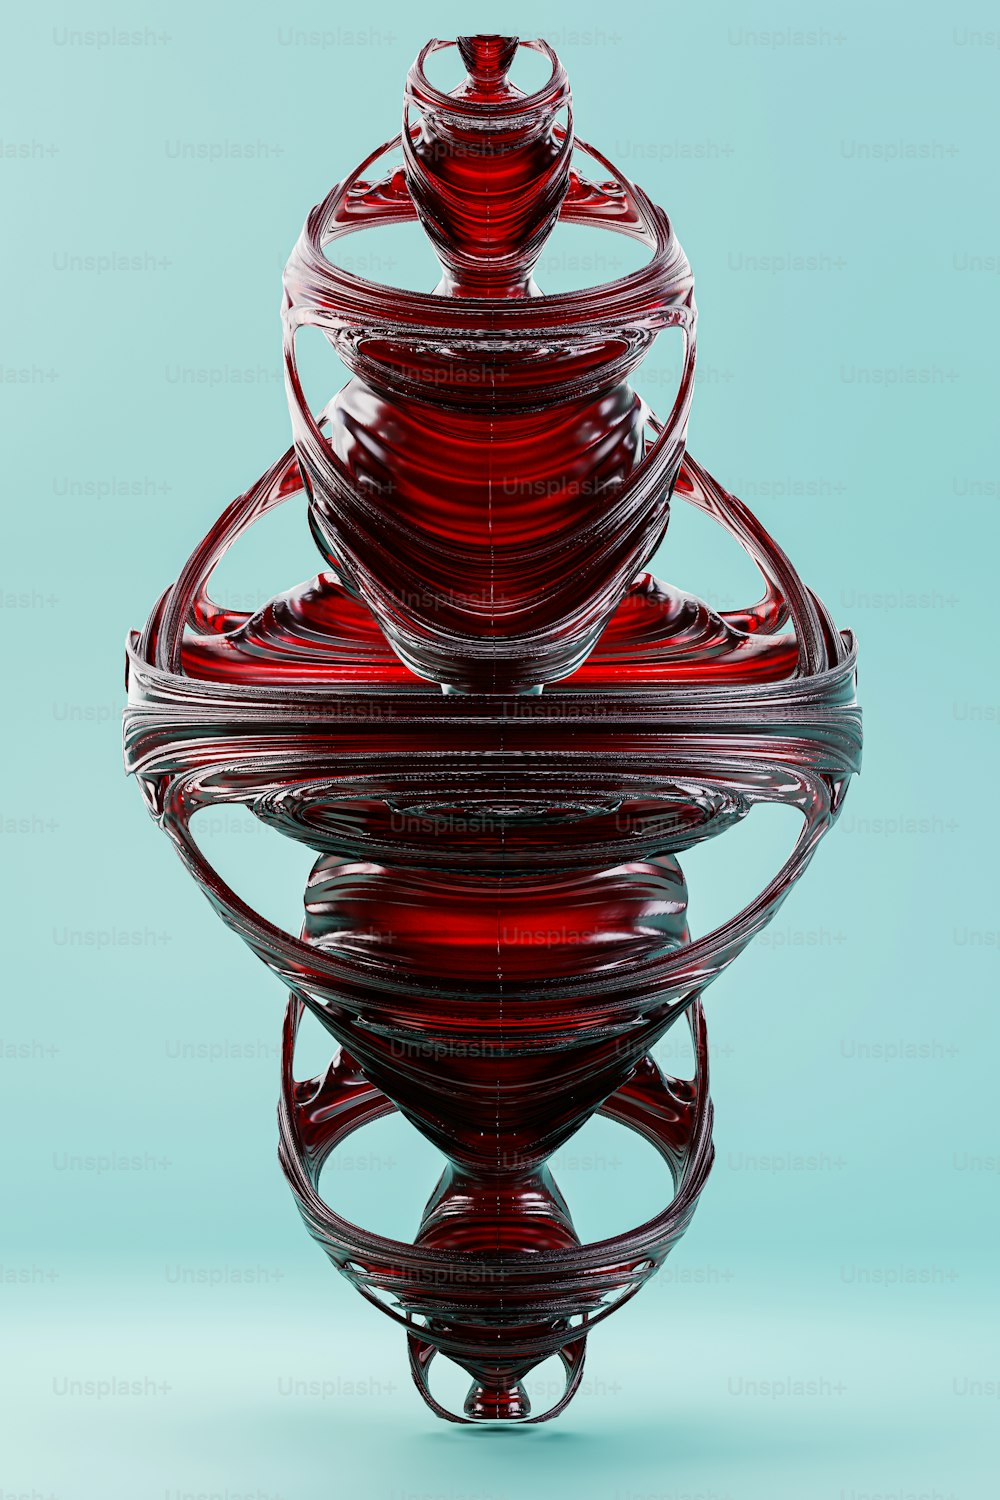 Un objeto de vidrio rojo sentado encima de una superficie azul